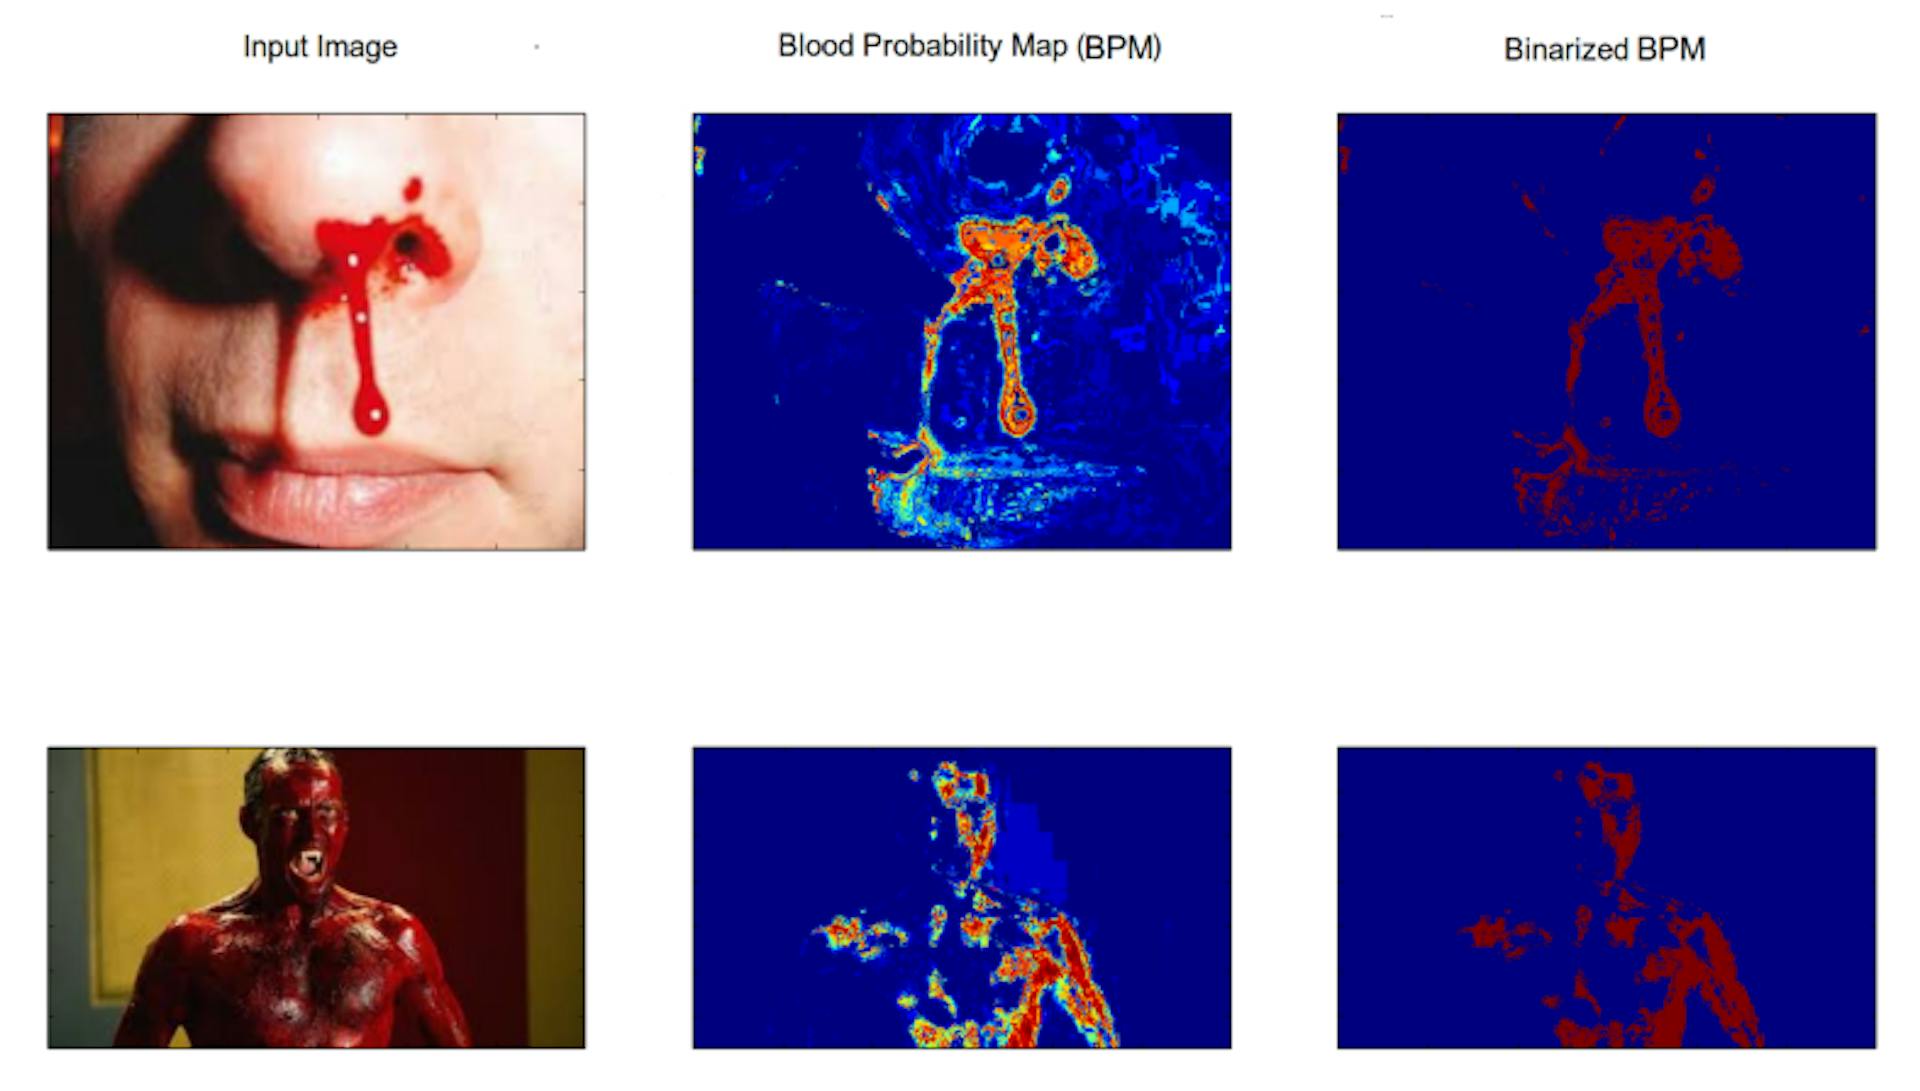 Şekil 3.4: Oluşturulan kan modelinin kan tespitindeki performansını gösteren şekil. İlk sütunda giriş görüntüleri, ikinci sütunda kan olasılık haritaları ve son sütunda ikili kan olasılık haritaları bulunur.